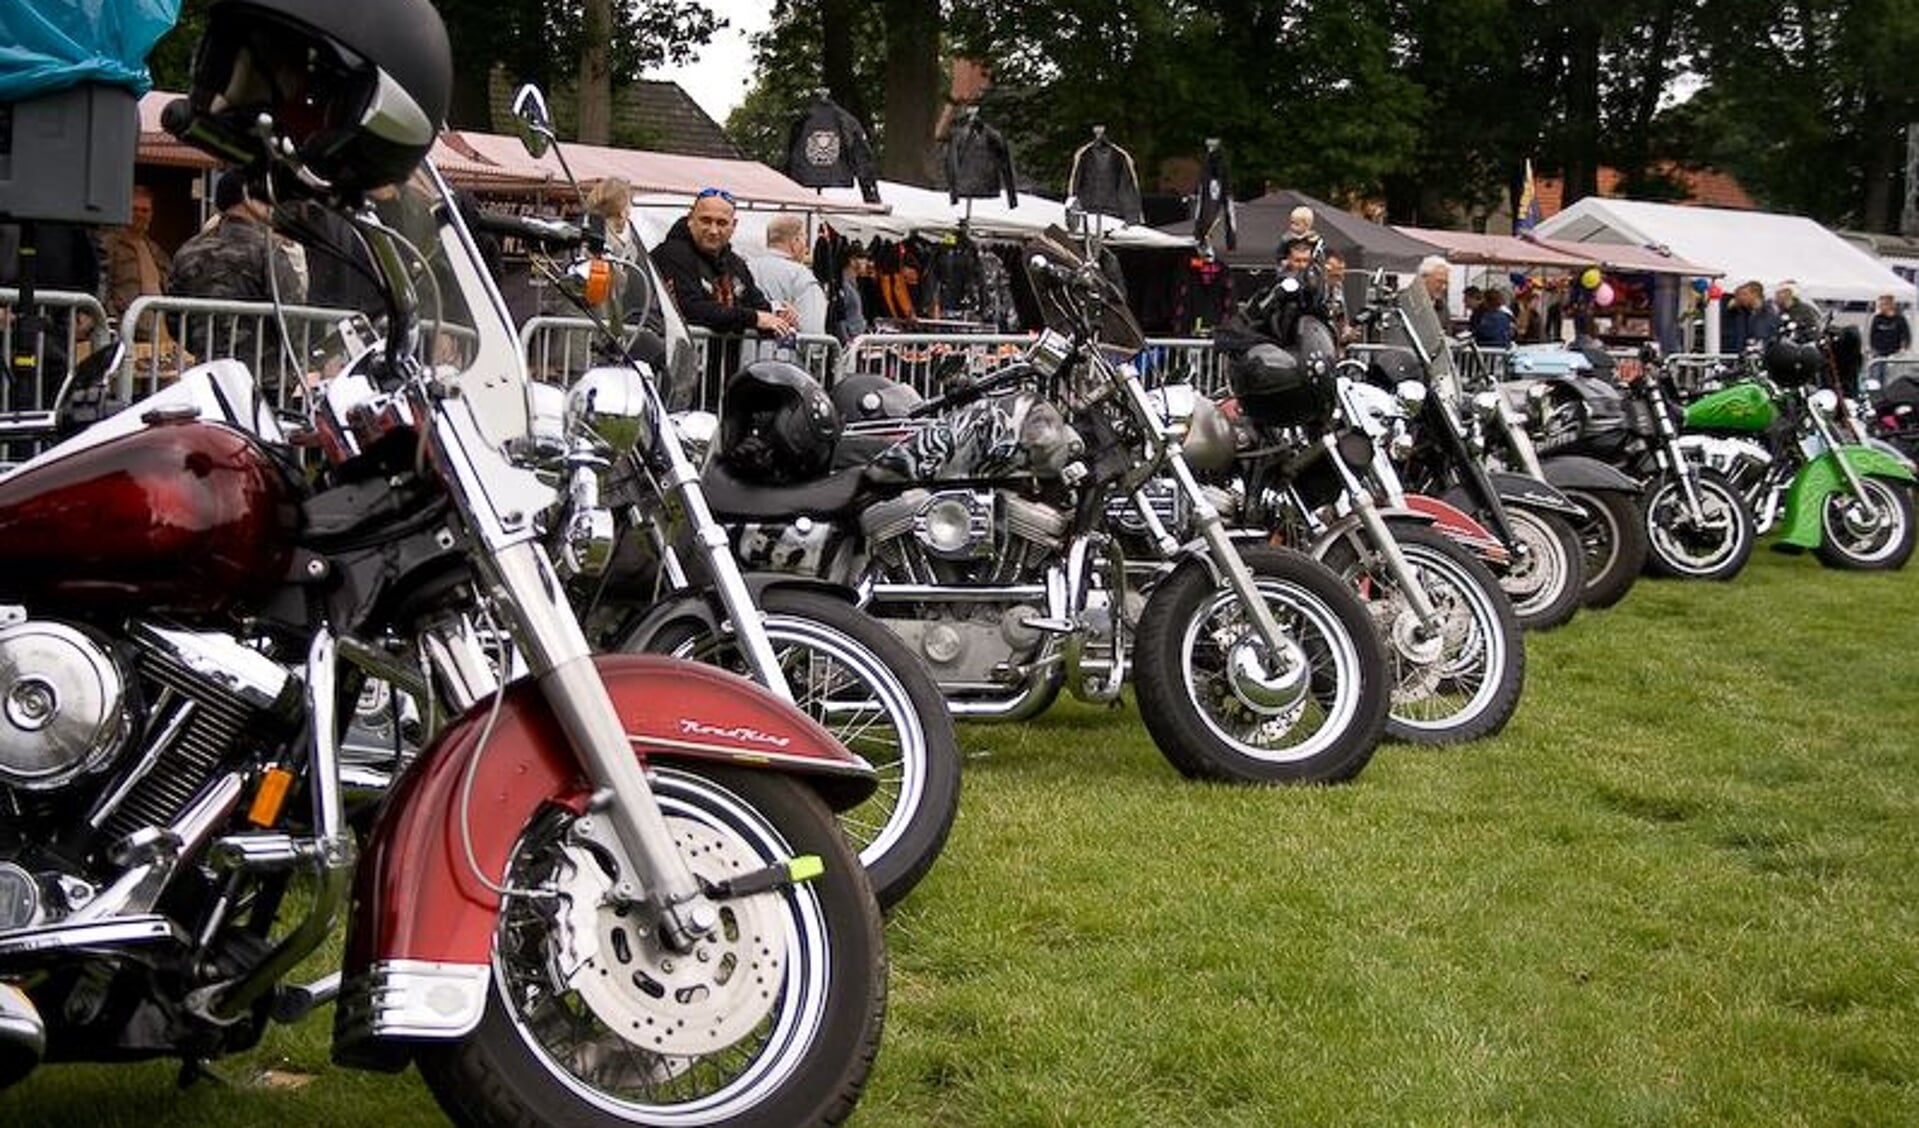 De Stichting Harleydag Annen wil het jaar afsluiten met een leuke actie voor 65+ers. (eigen foto).